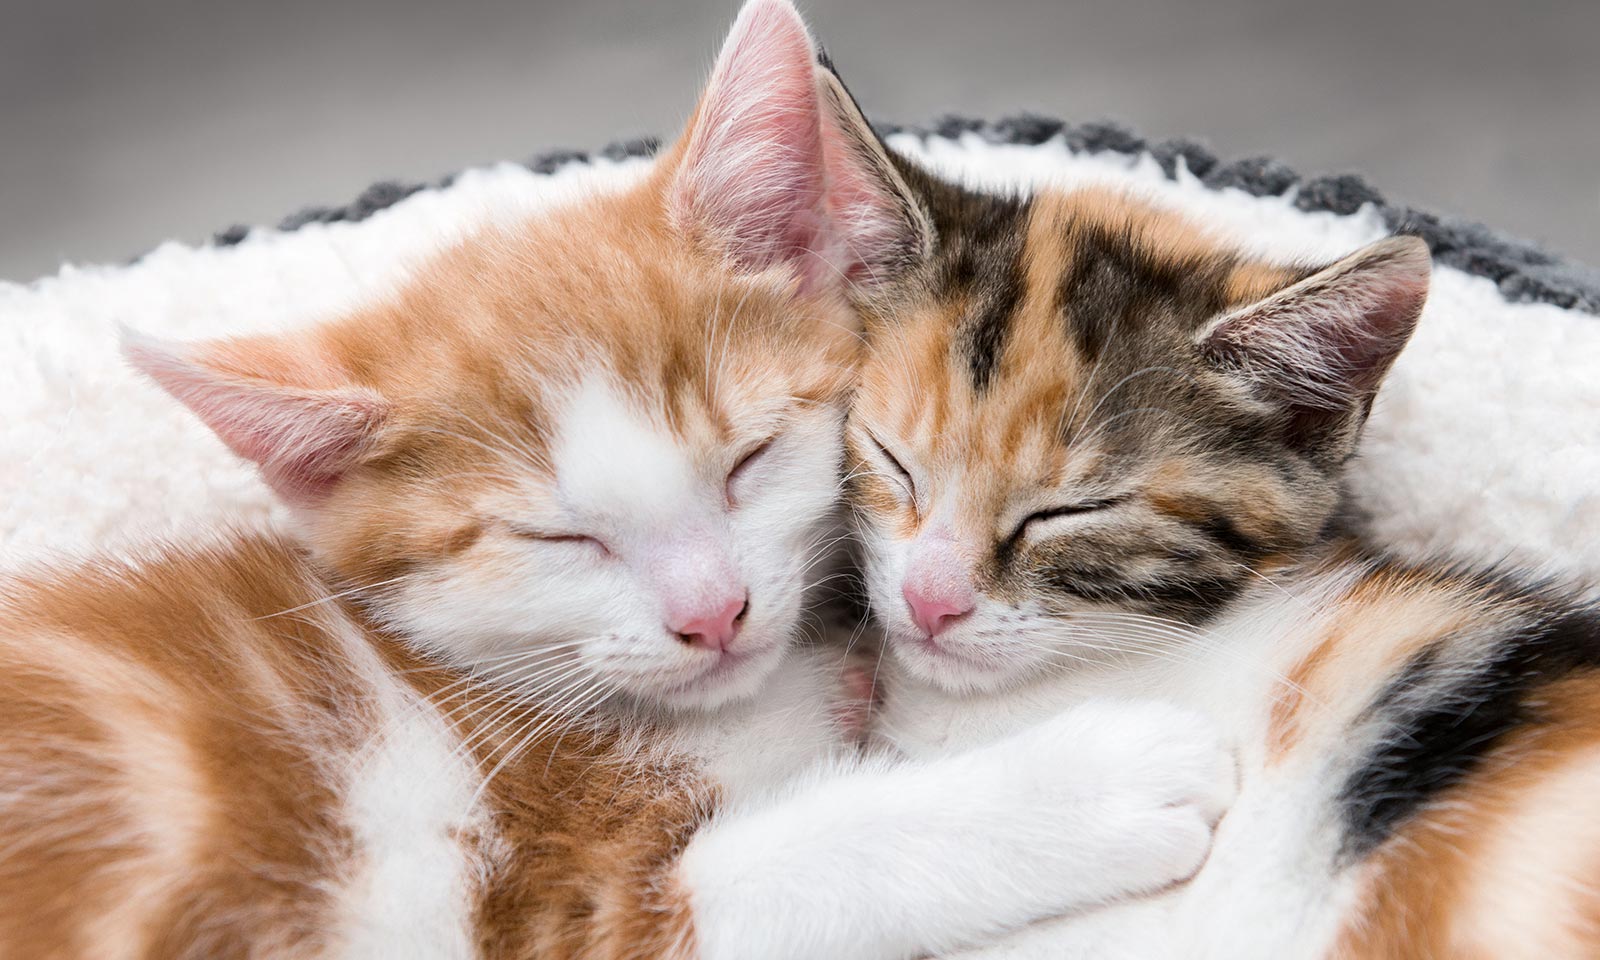 Kitties sleeping